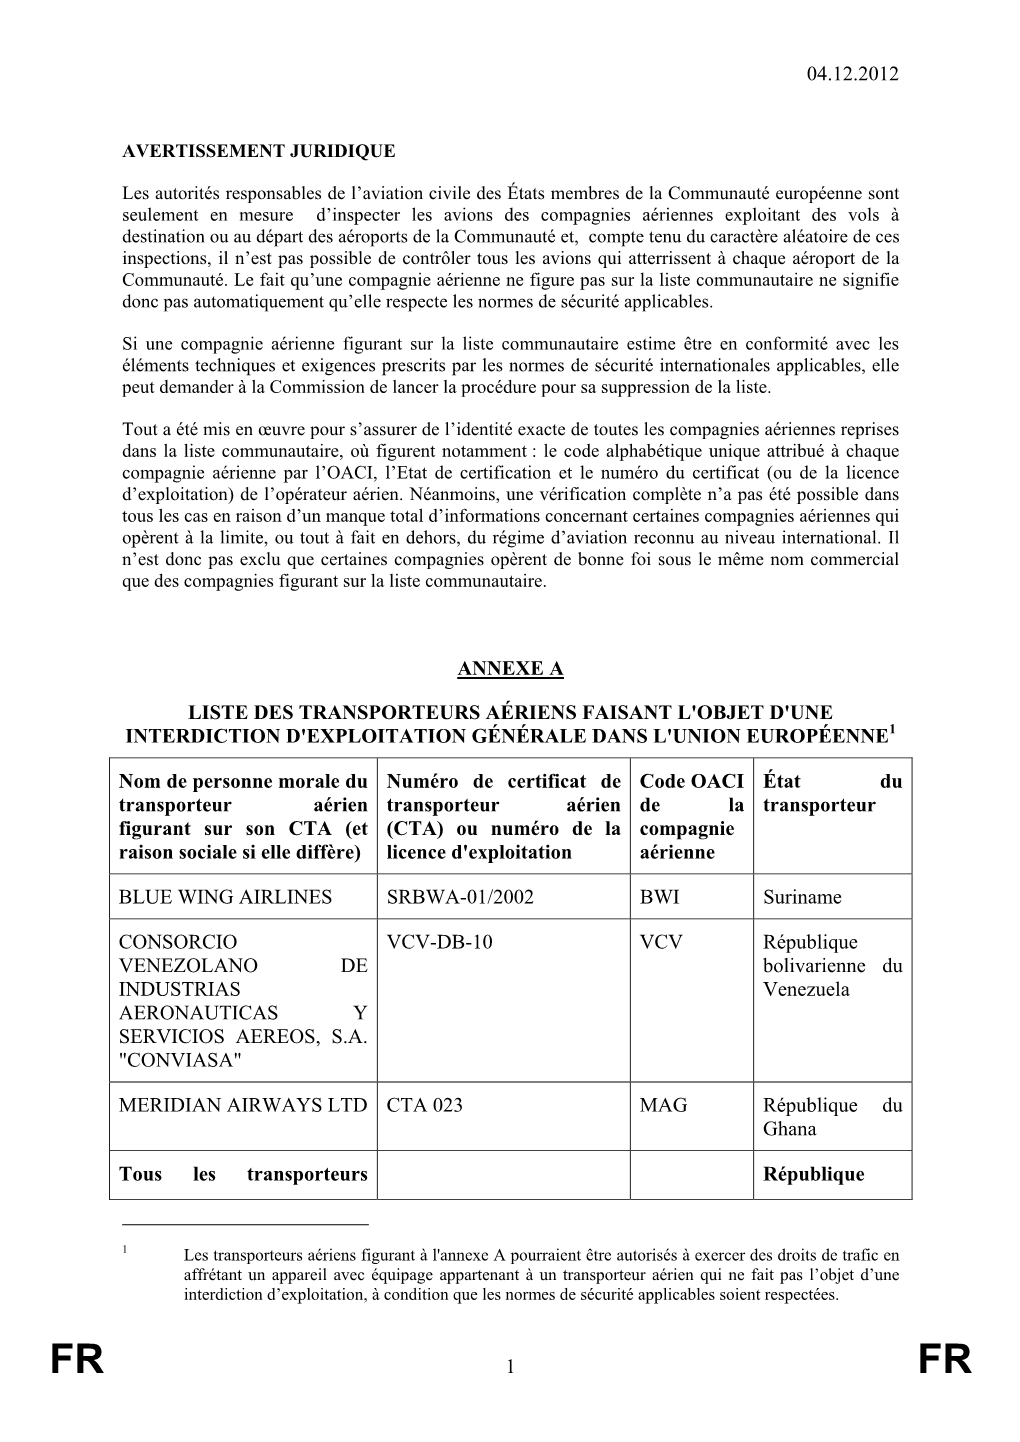 04.12.2012 1 Annexe a Liste Des Transporteurs Aériens Faisant L'objet D'une Interdiction D'exploitation Générale Dans L'union